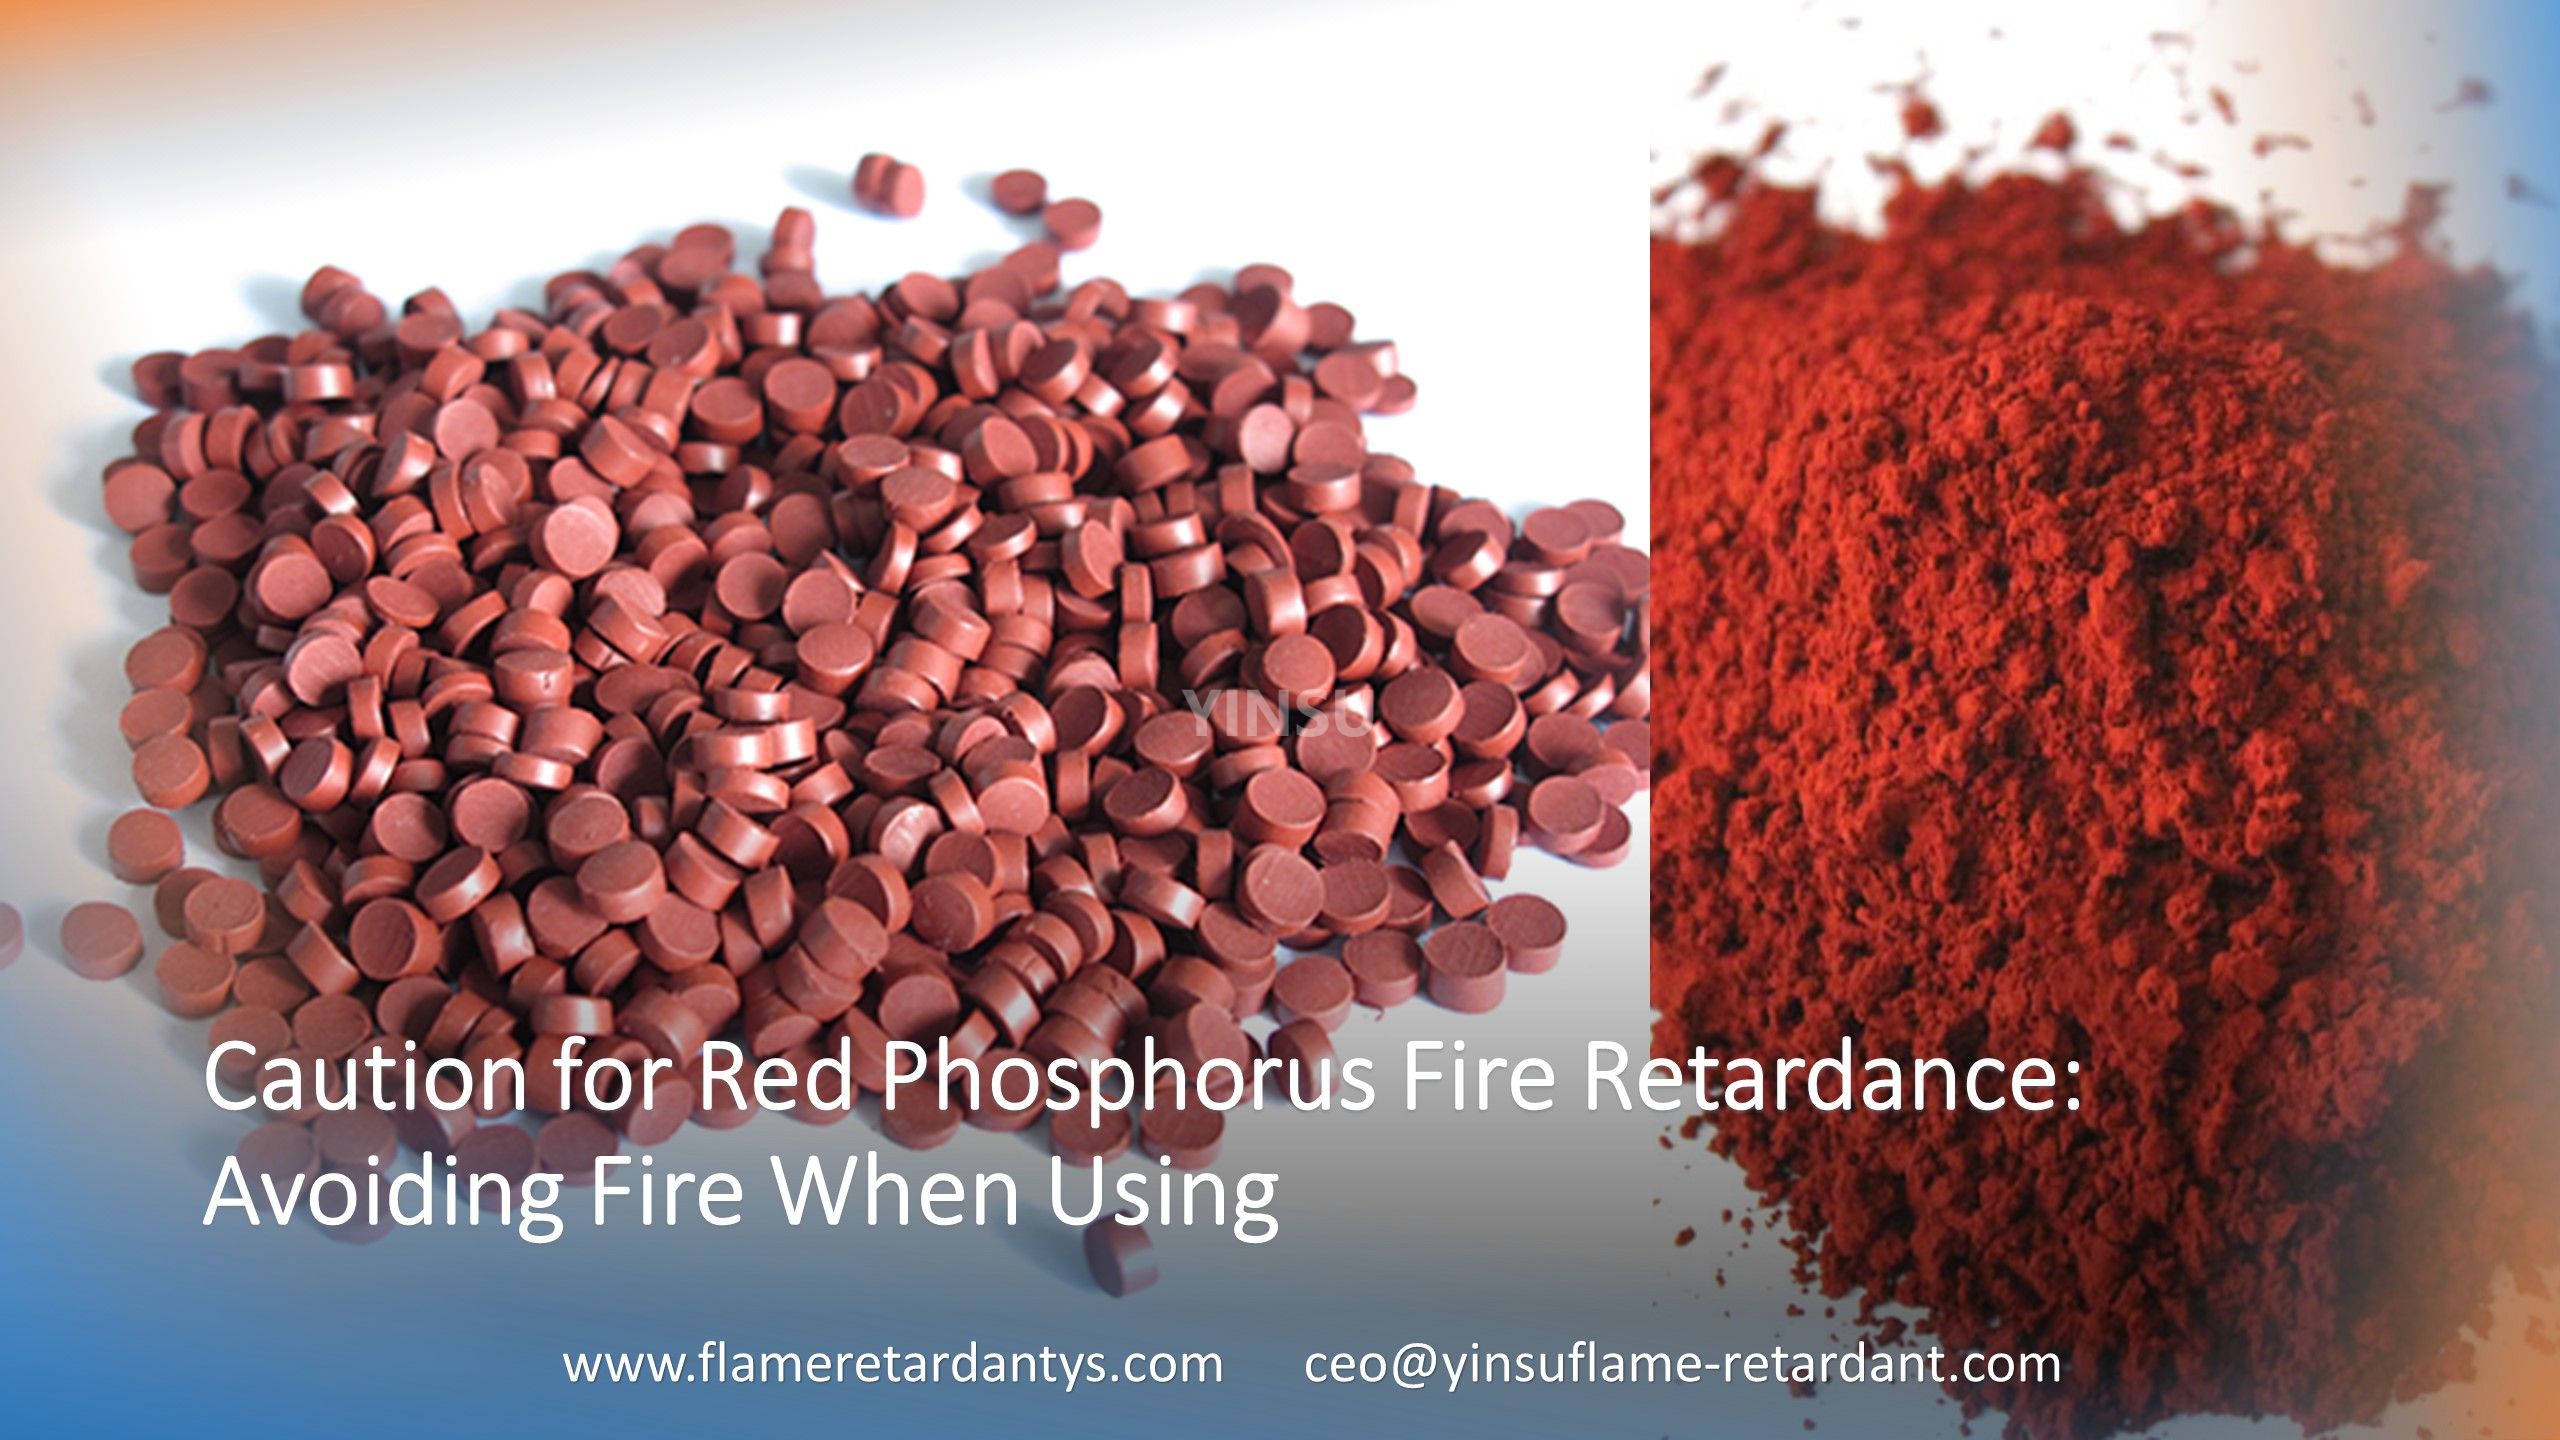 Меры предосторожности в отношении огнестойкости красного фосфора: предотвращение возгорания при использовании